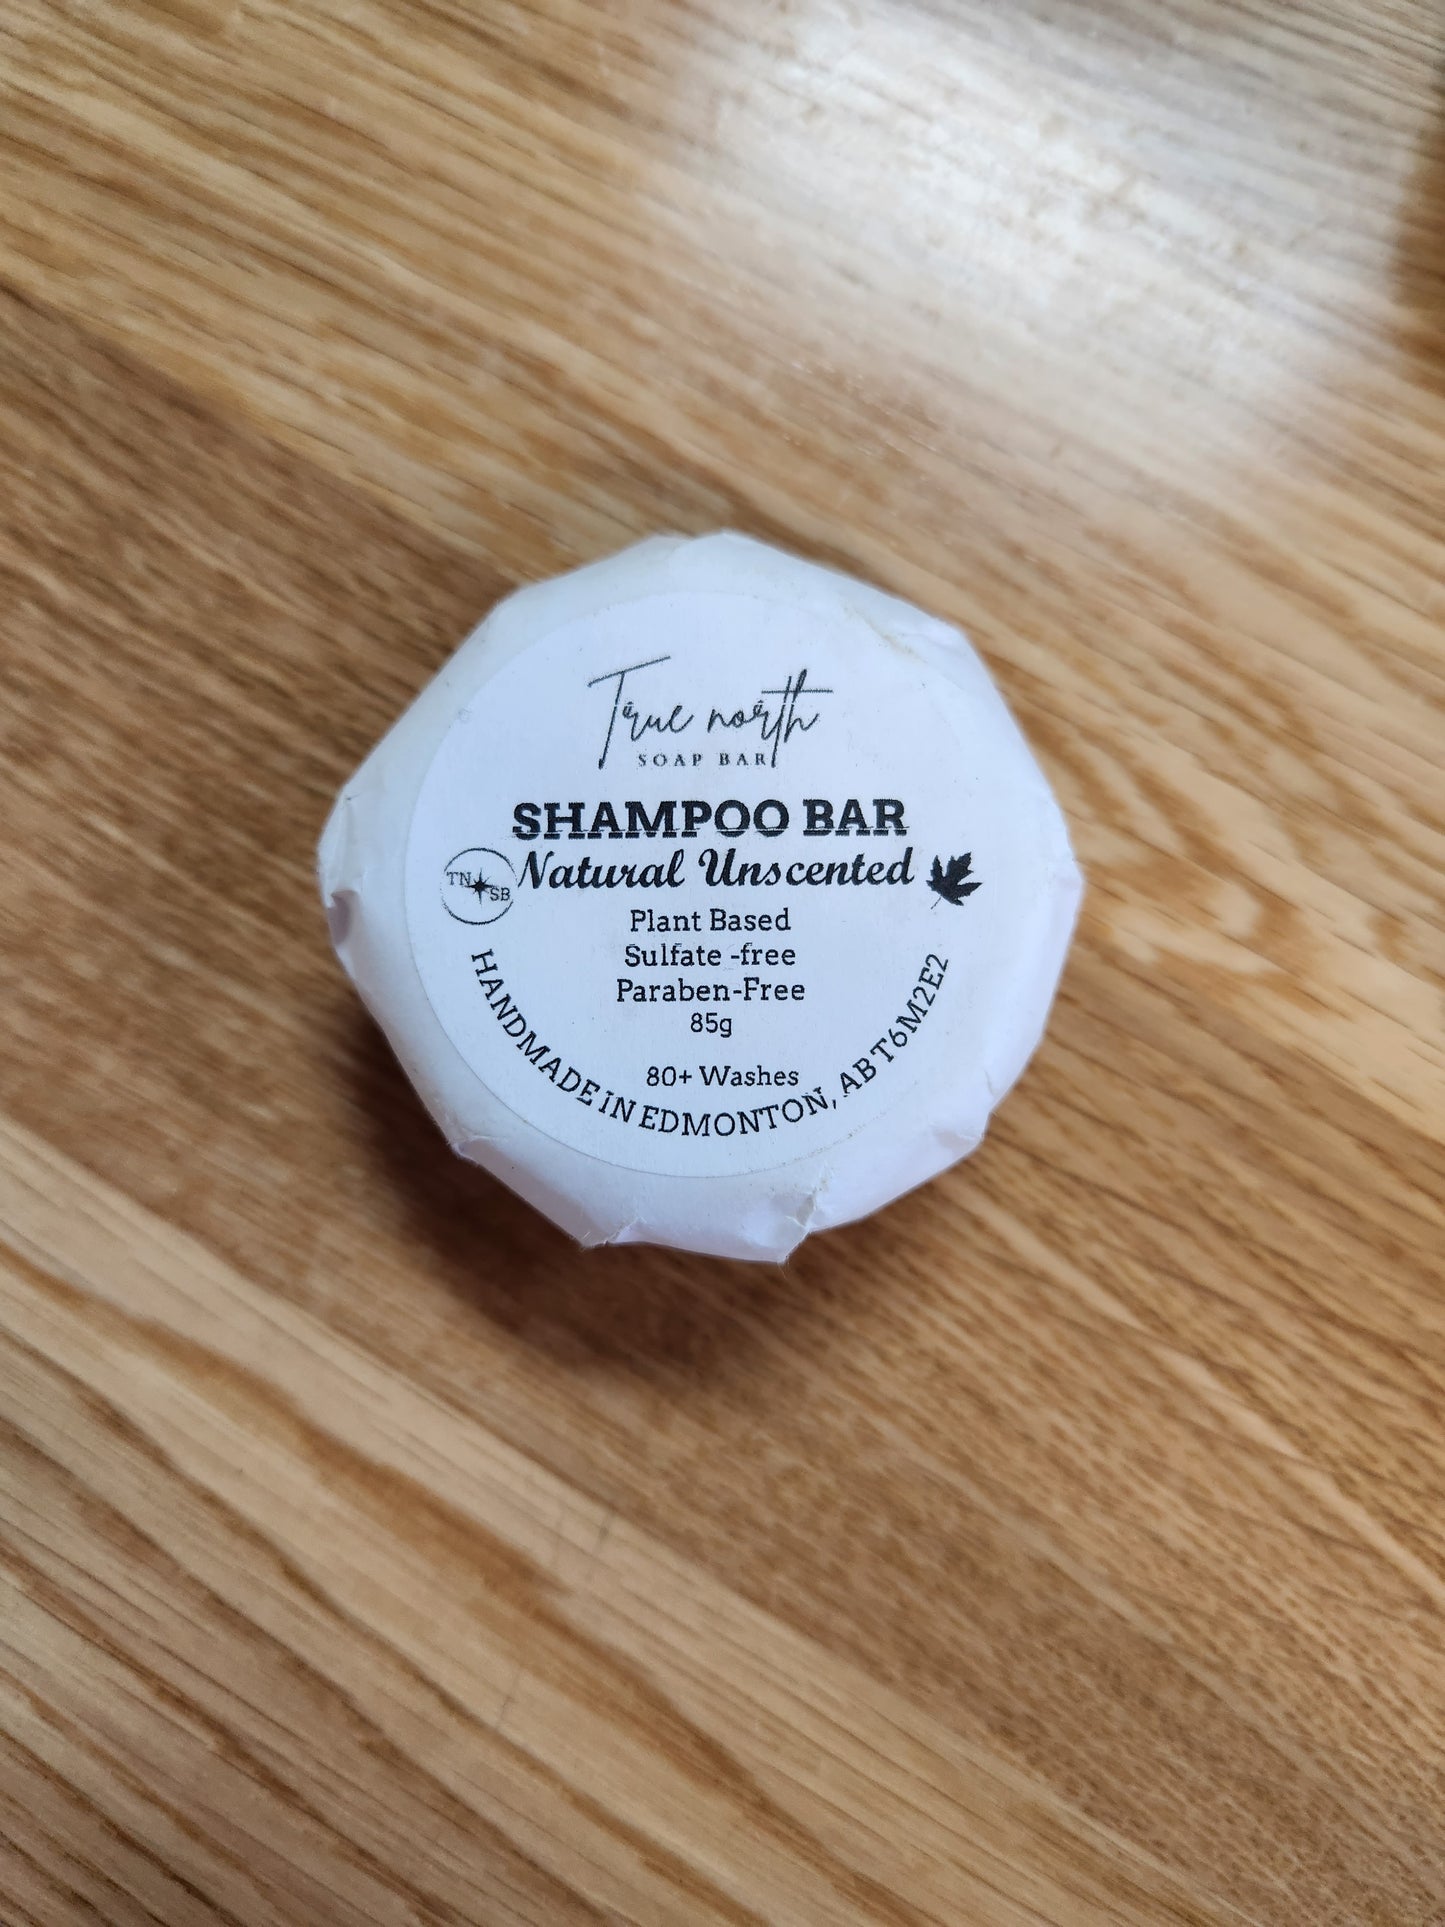 Shampoo Bar - Natural unscented